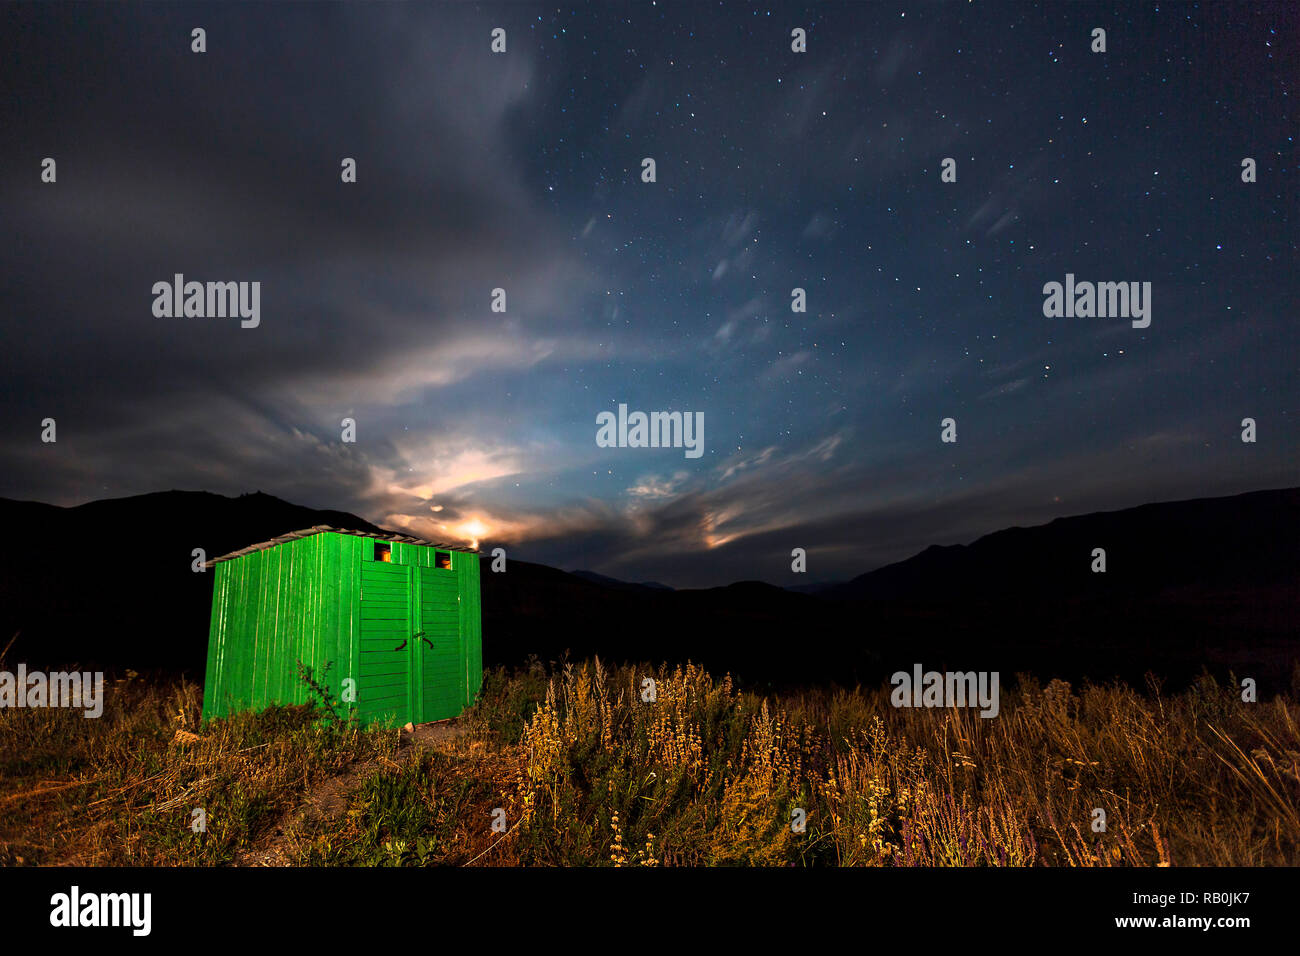 Green baita in legno con impostazione della luna e delle stelle nel cielo, in Kolsai zona dei laghi, Kazakistan. Foto Stock